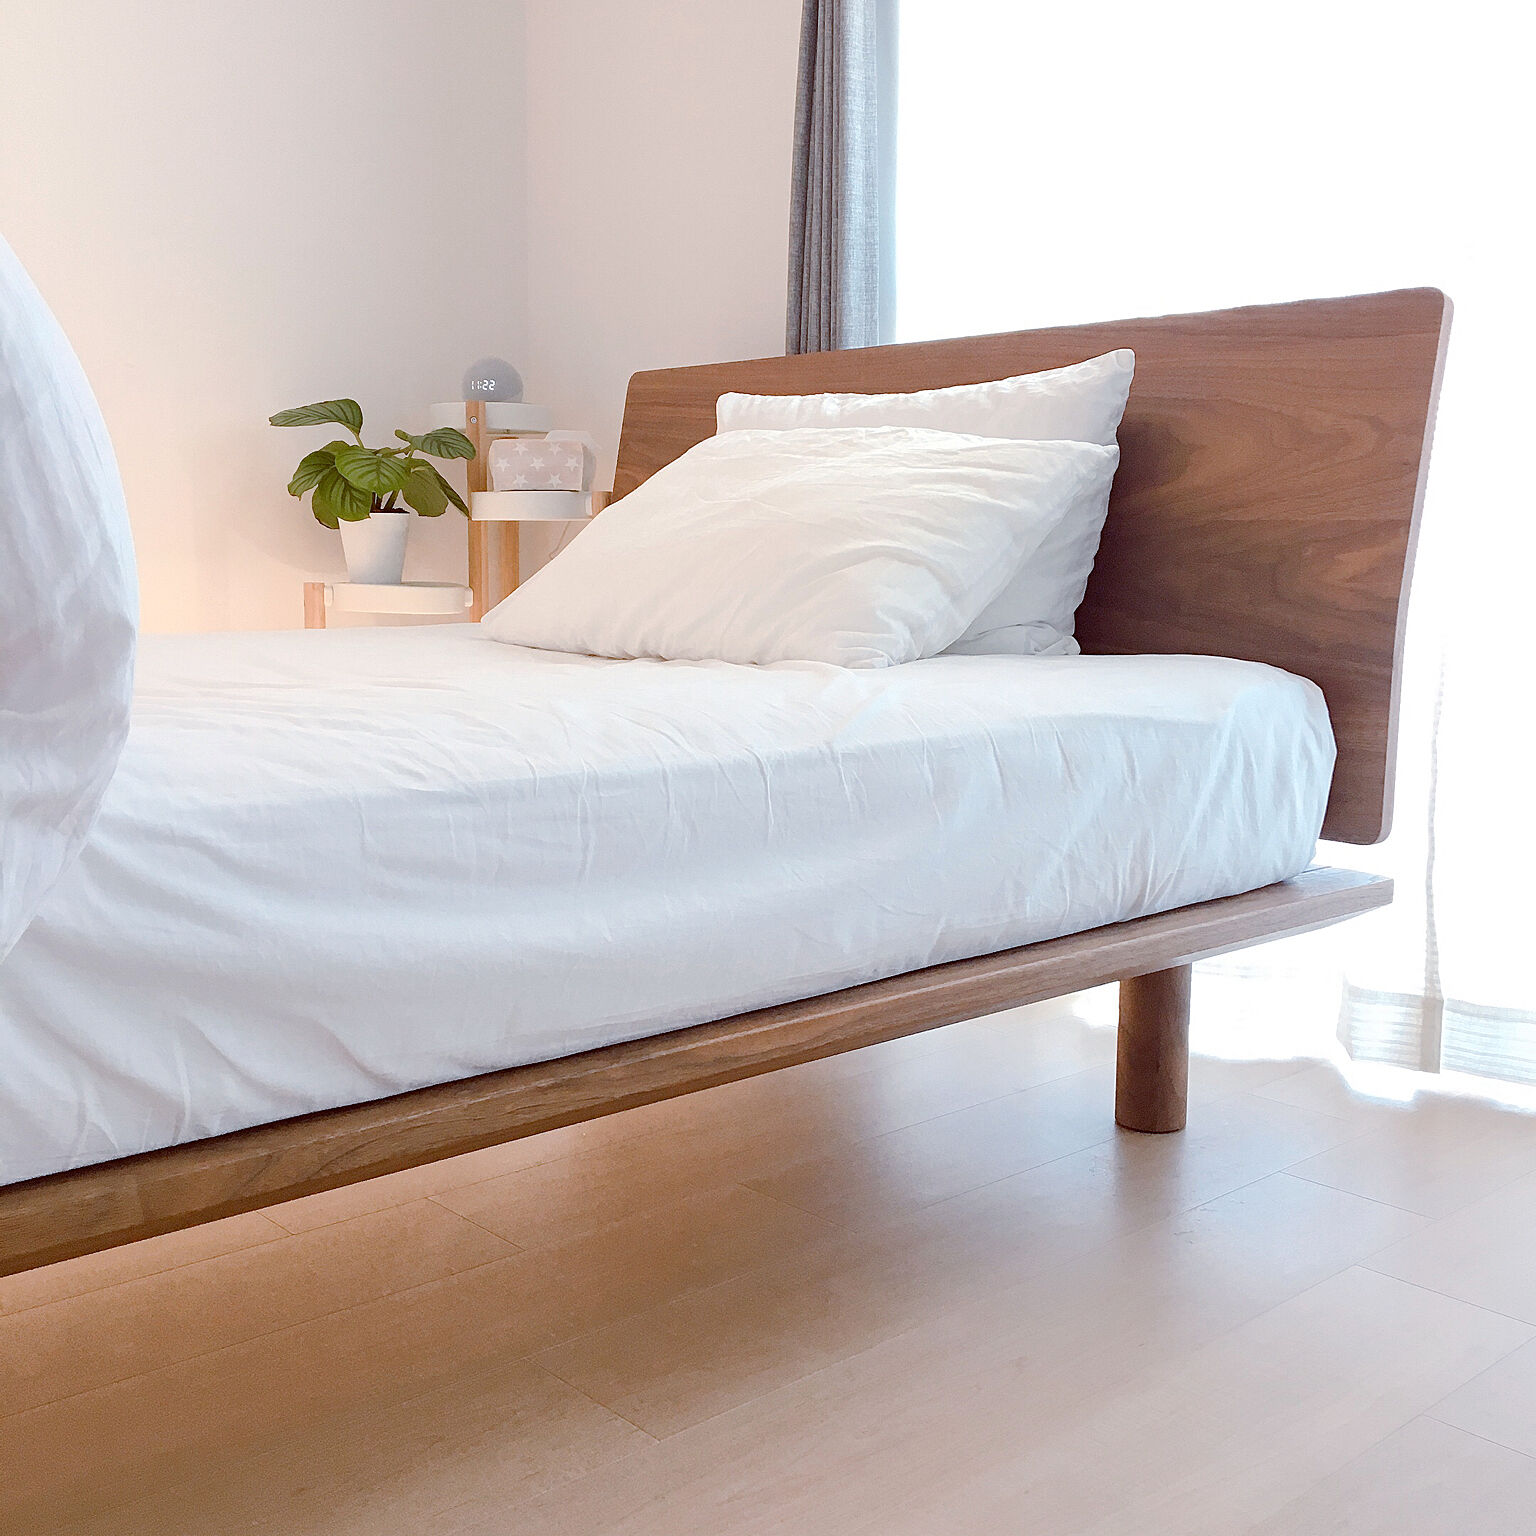 シンプルで使いやすい♡無印良品のベッドアイテムで快適なベッド作り 